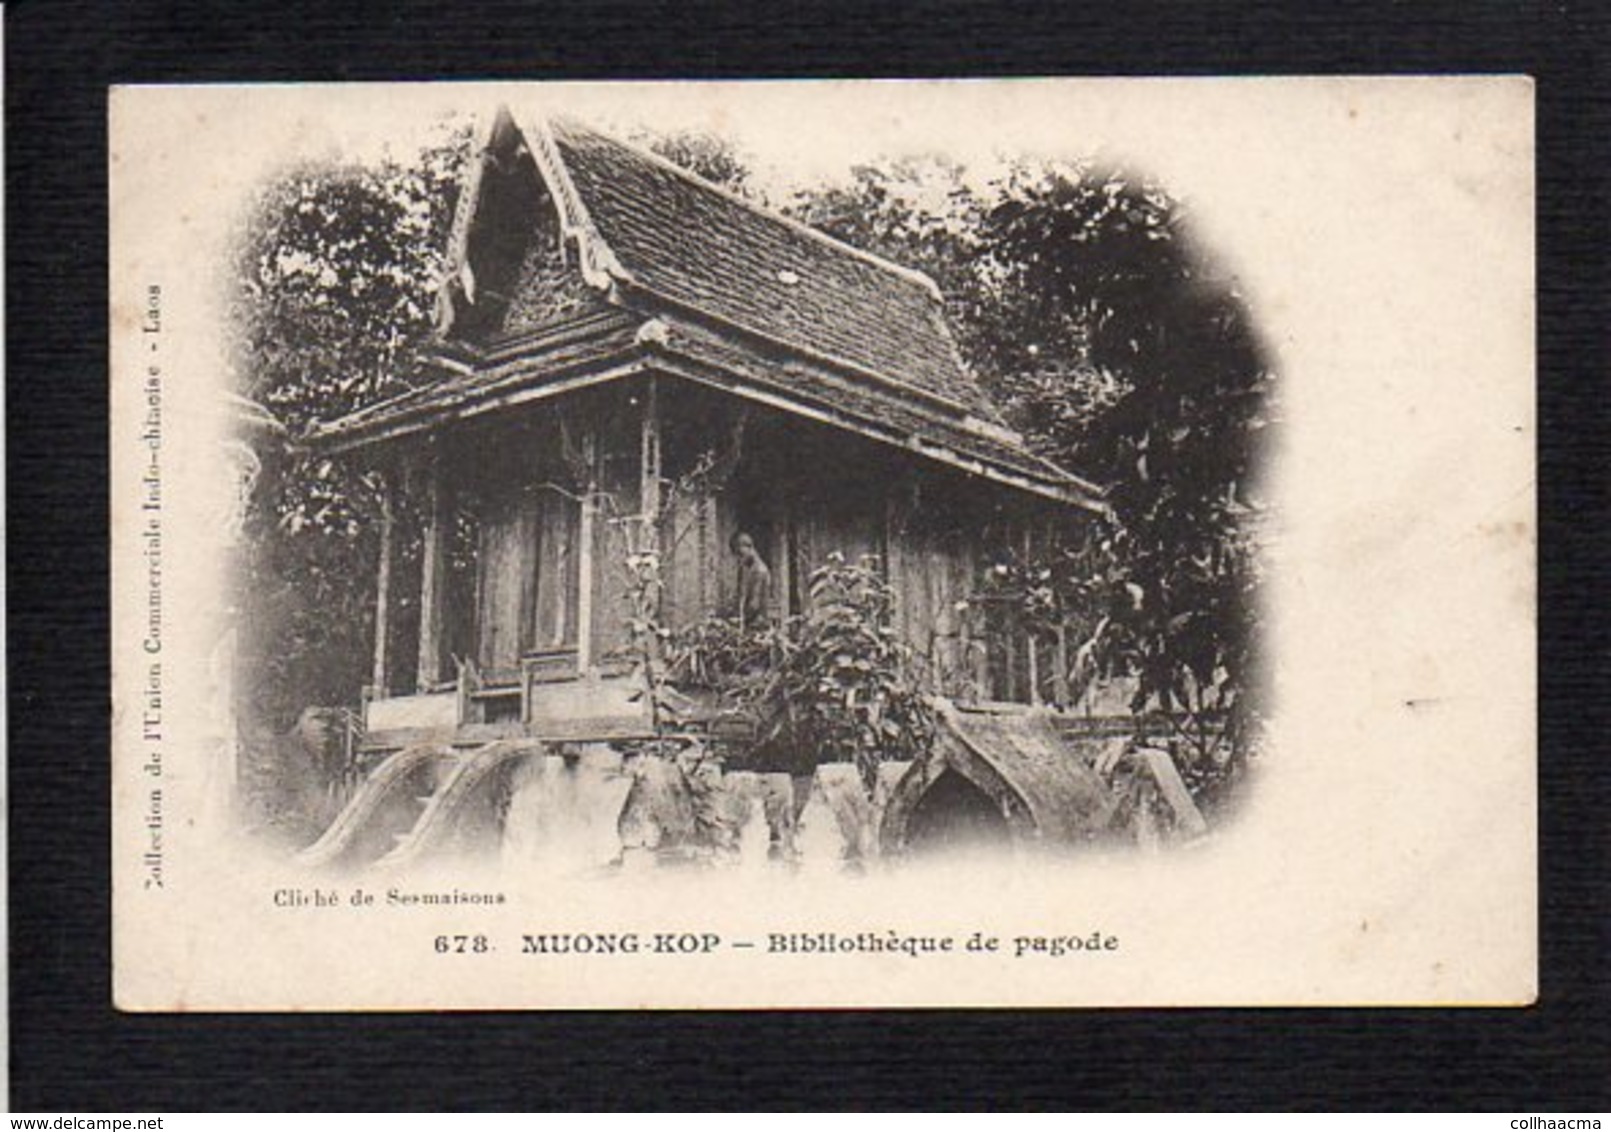 Laos,Tonkin,Cambodge Indochine,Viet Nam,Cochinchine  / Muong Kop / Bibliothèque De Pagode - Laos